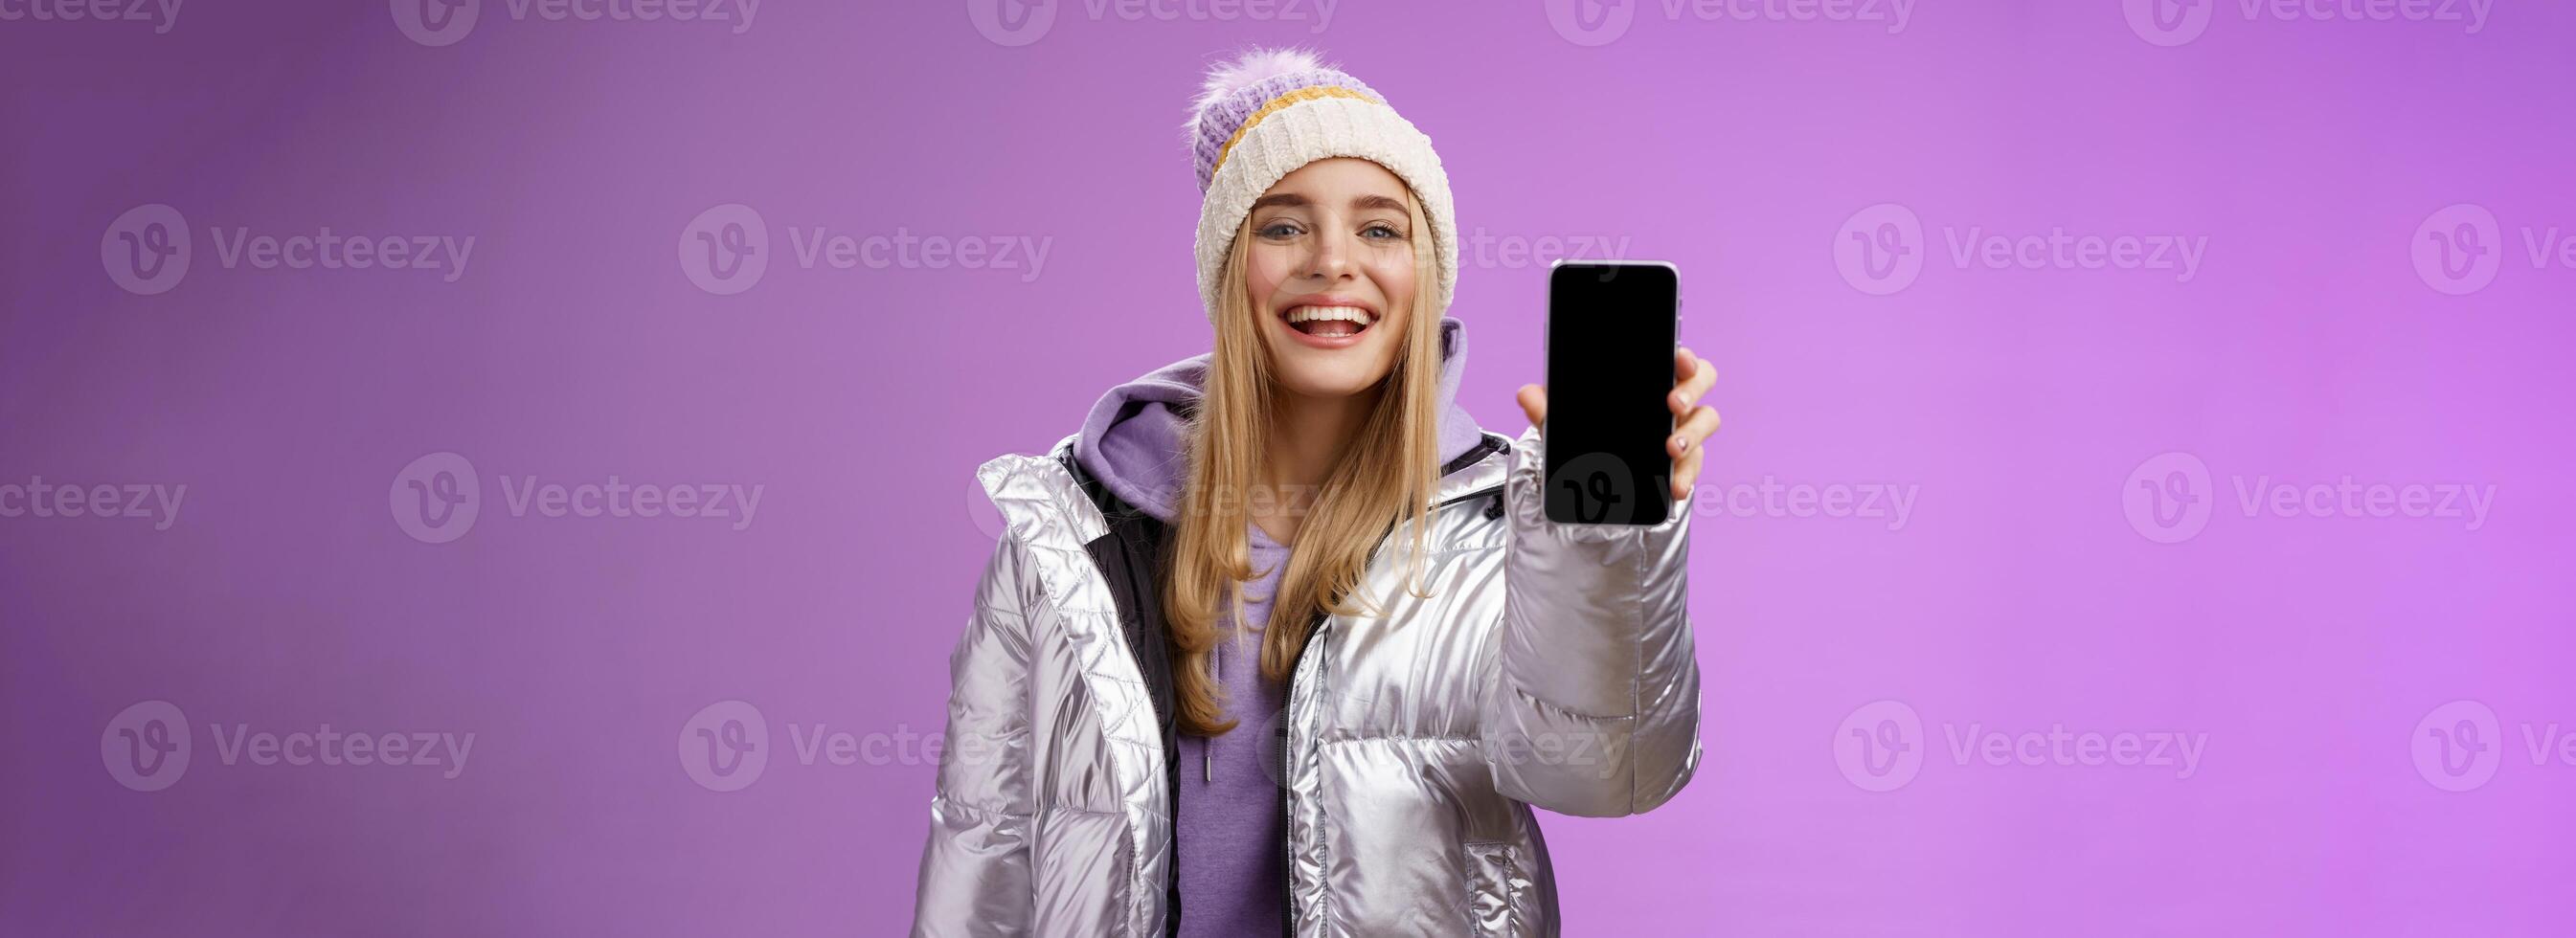 brutaal verheugd vrolijk blond vrouw adviseren gebruik app Bewerk perfect afbeeldingen Holding smartphone tonen mobiel telefoon Scherm trots bevredigend glimlach camera, staand Purper achtergrond foto